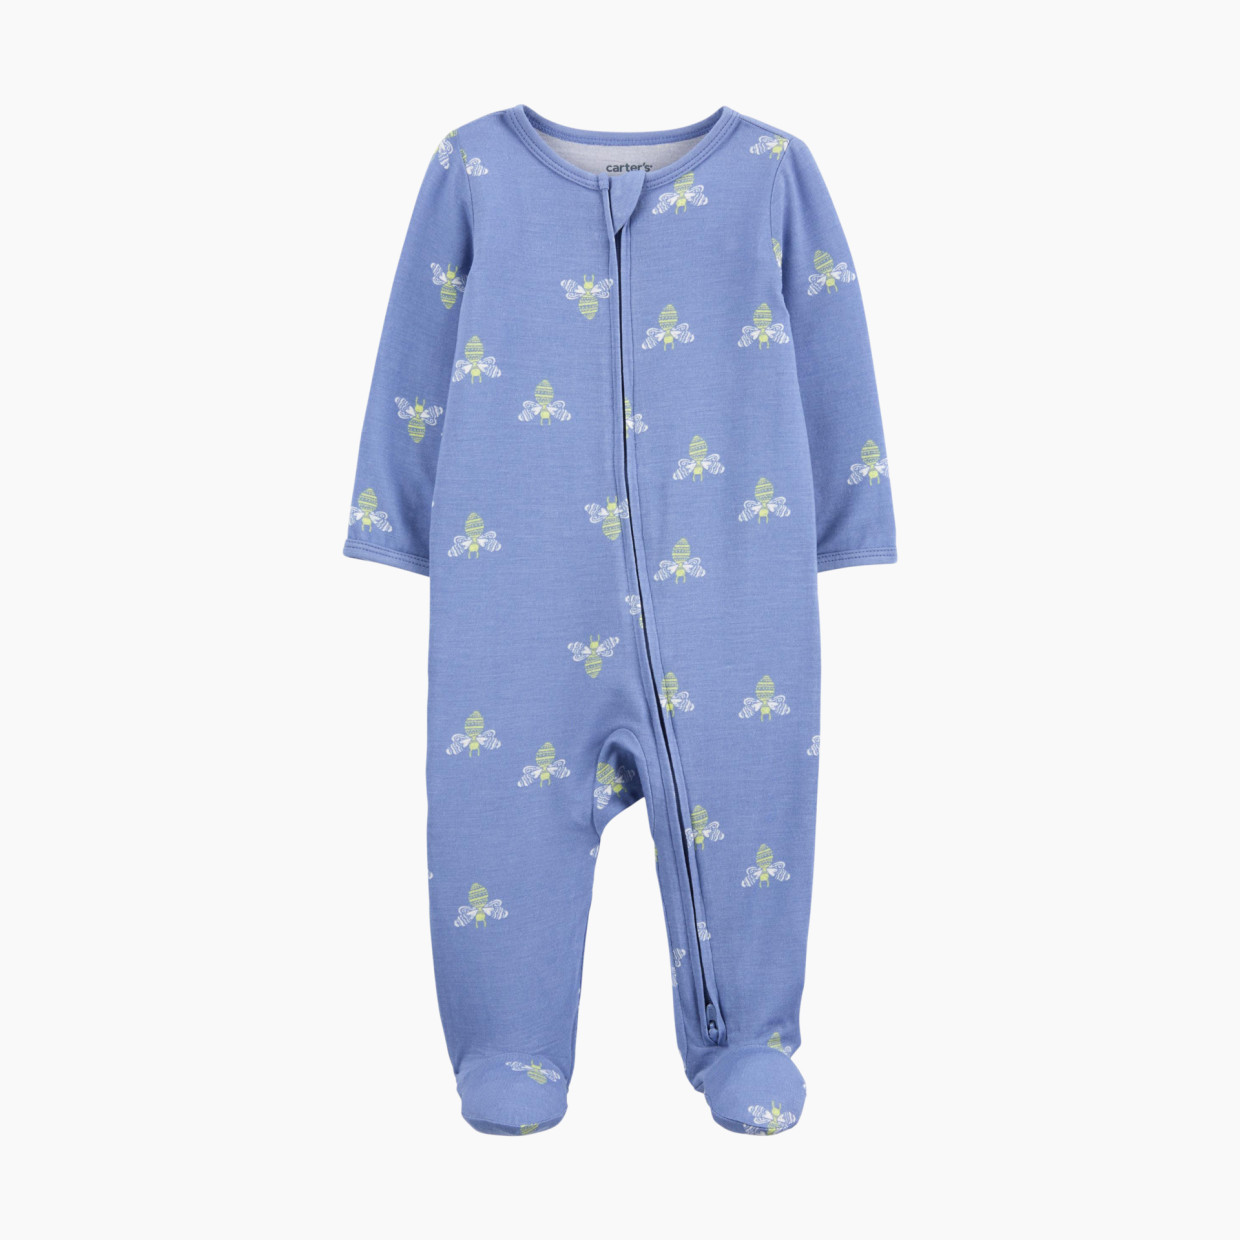 Carter's 2-Way Zip Lenzing Ecovera Sleep & Play Pajamas - Blue Bees, Nb.